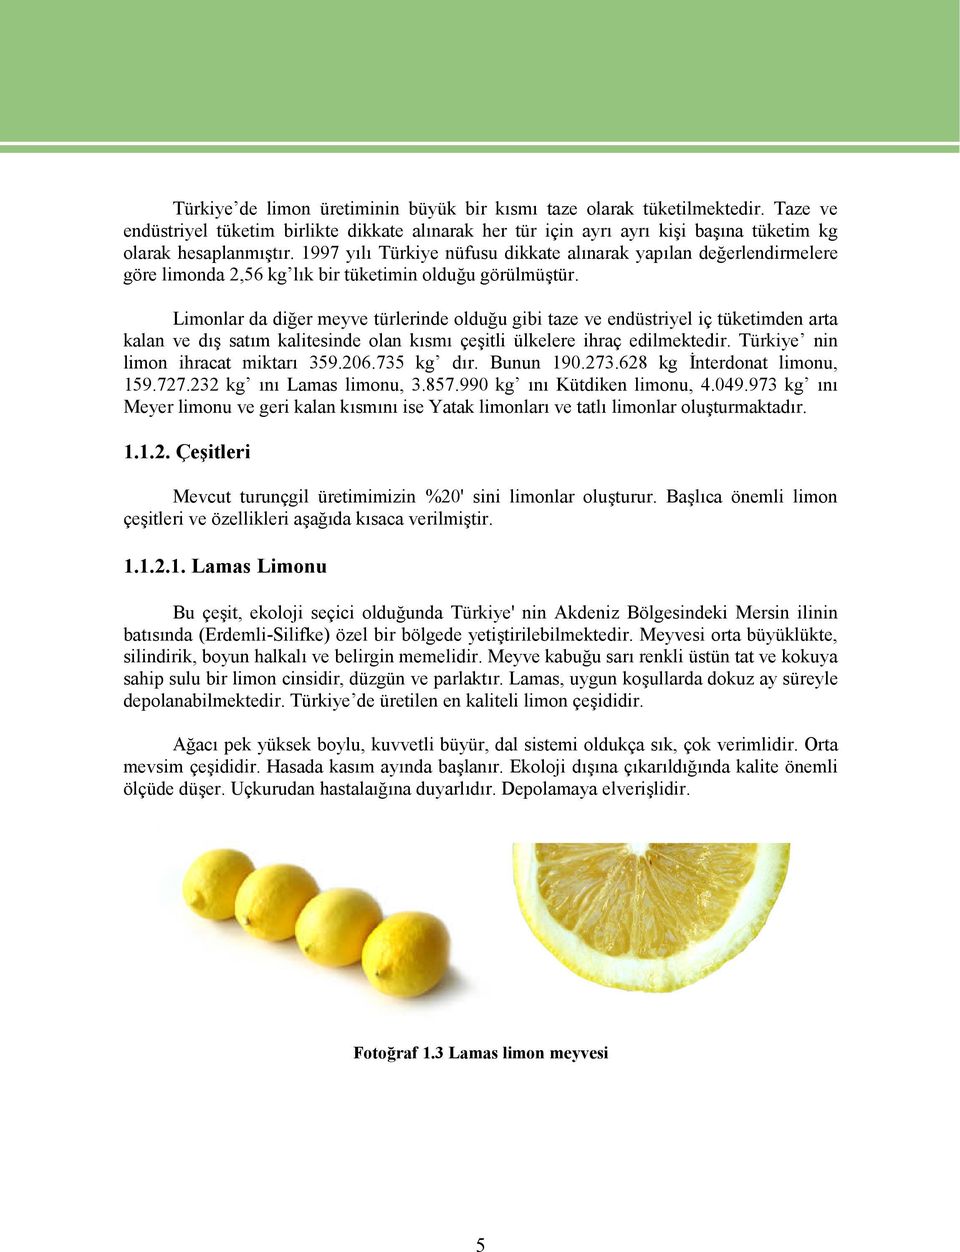 Limonlar da diğer meyve türlerinde olduğu gibi taze ve endüstriyel iç tüketimden arta kalan ve dış satım kalitesinde olan kısmı çeşitli ülkelere ihraç edilmektedir.